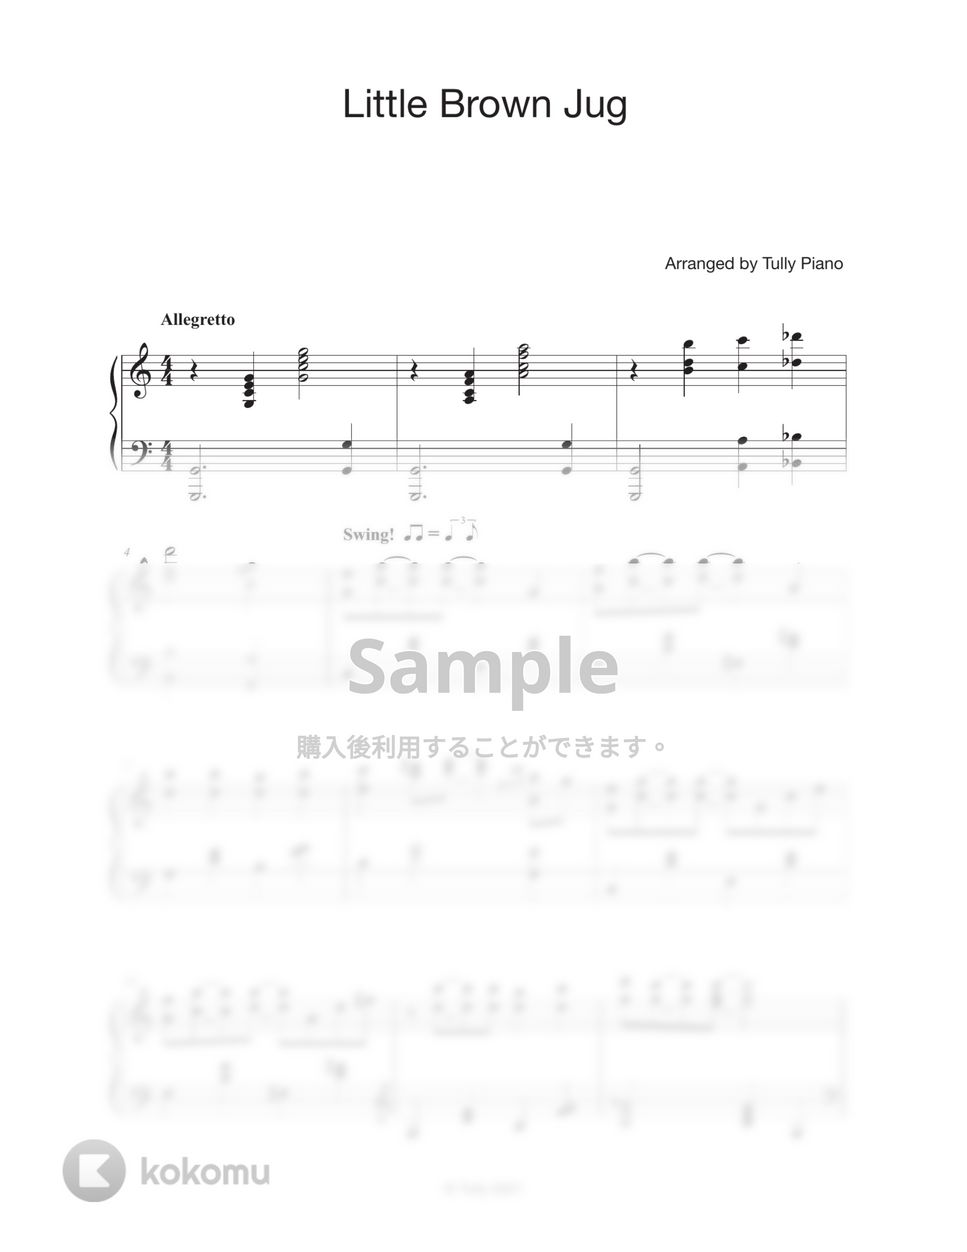 ピアノの森 ost. - Little Brown Jug (5 変奏曲) by Tully Piano